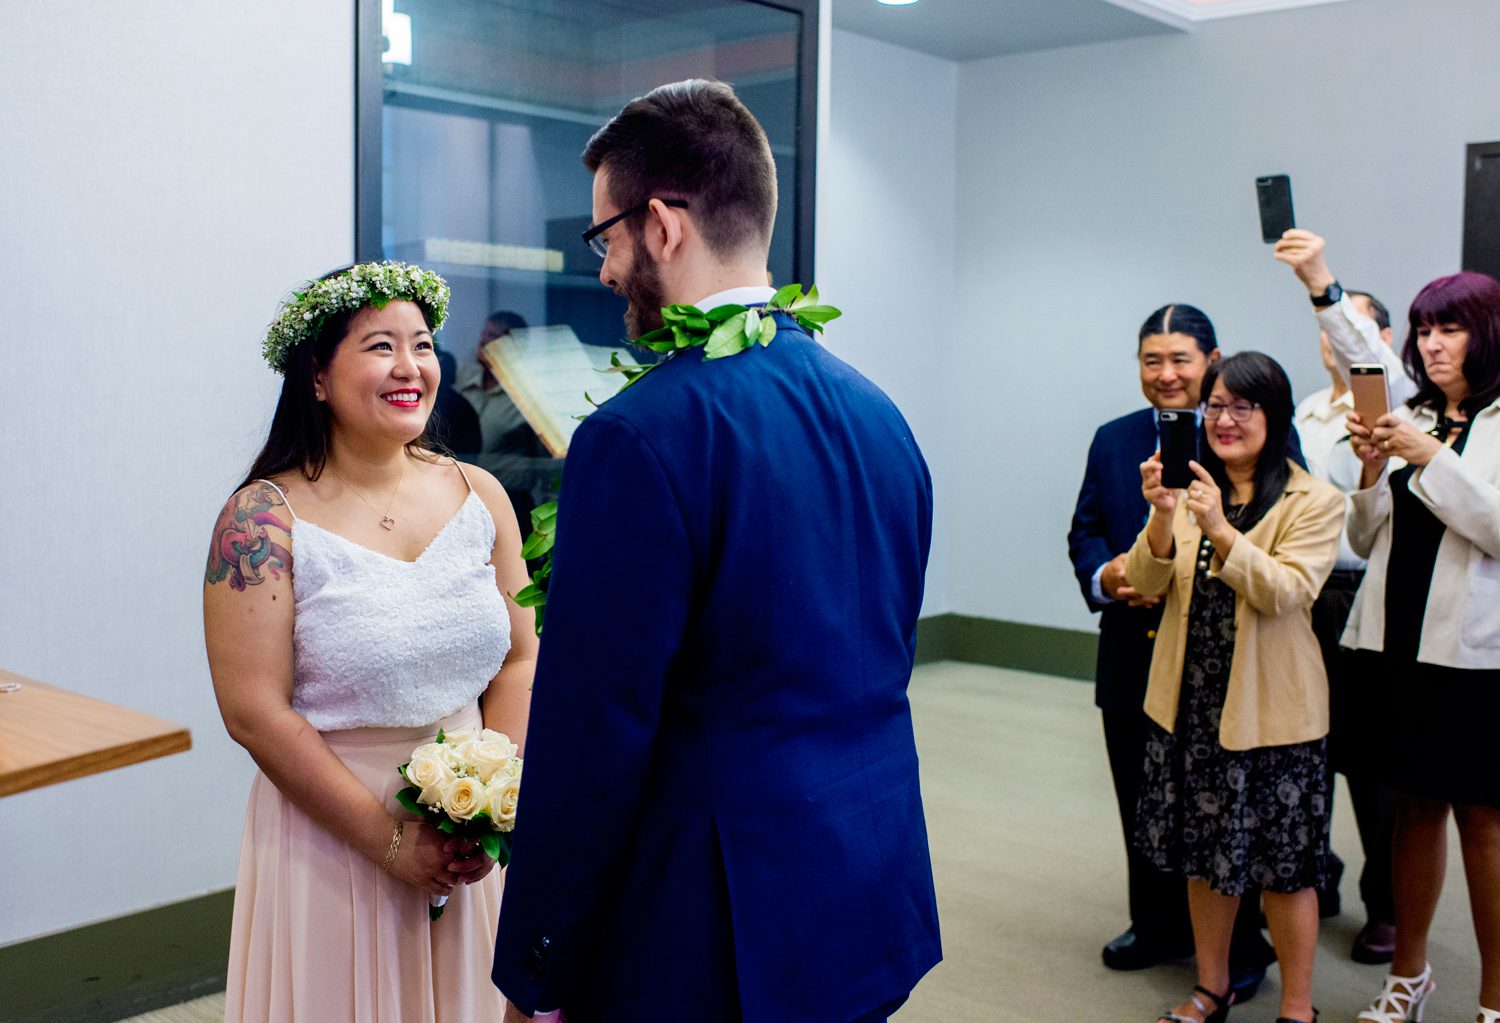 Ceremony at Manhattan Marriage Bureau